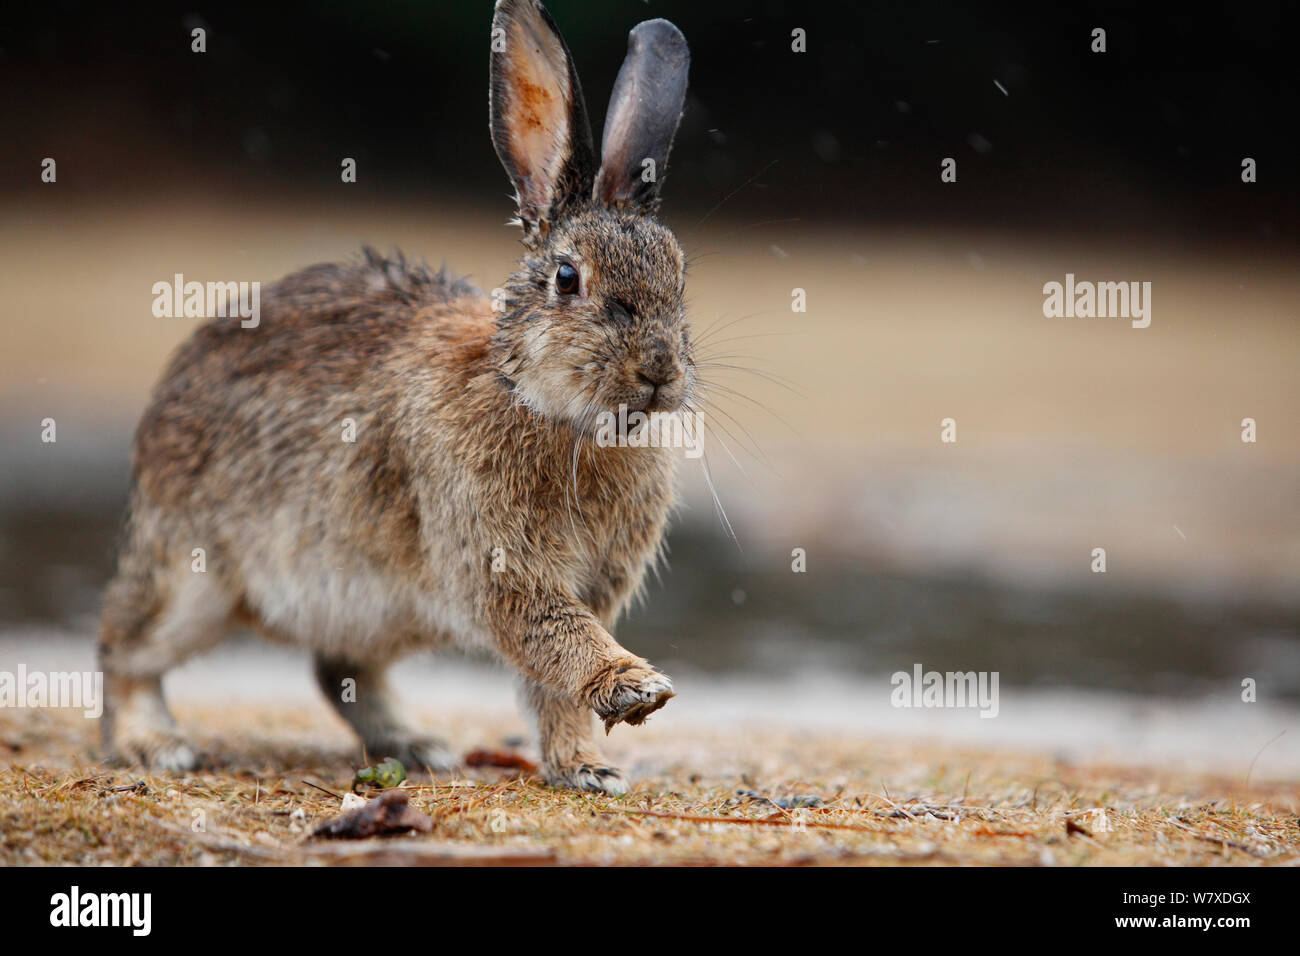 Les sauvages lapin (Oryctolagus cuniculus) avec fourrure humide, Okunojima Island, également connu sous le nom de Rabbit Island, Hiroshima, Japon. Banque D'Images